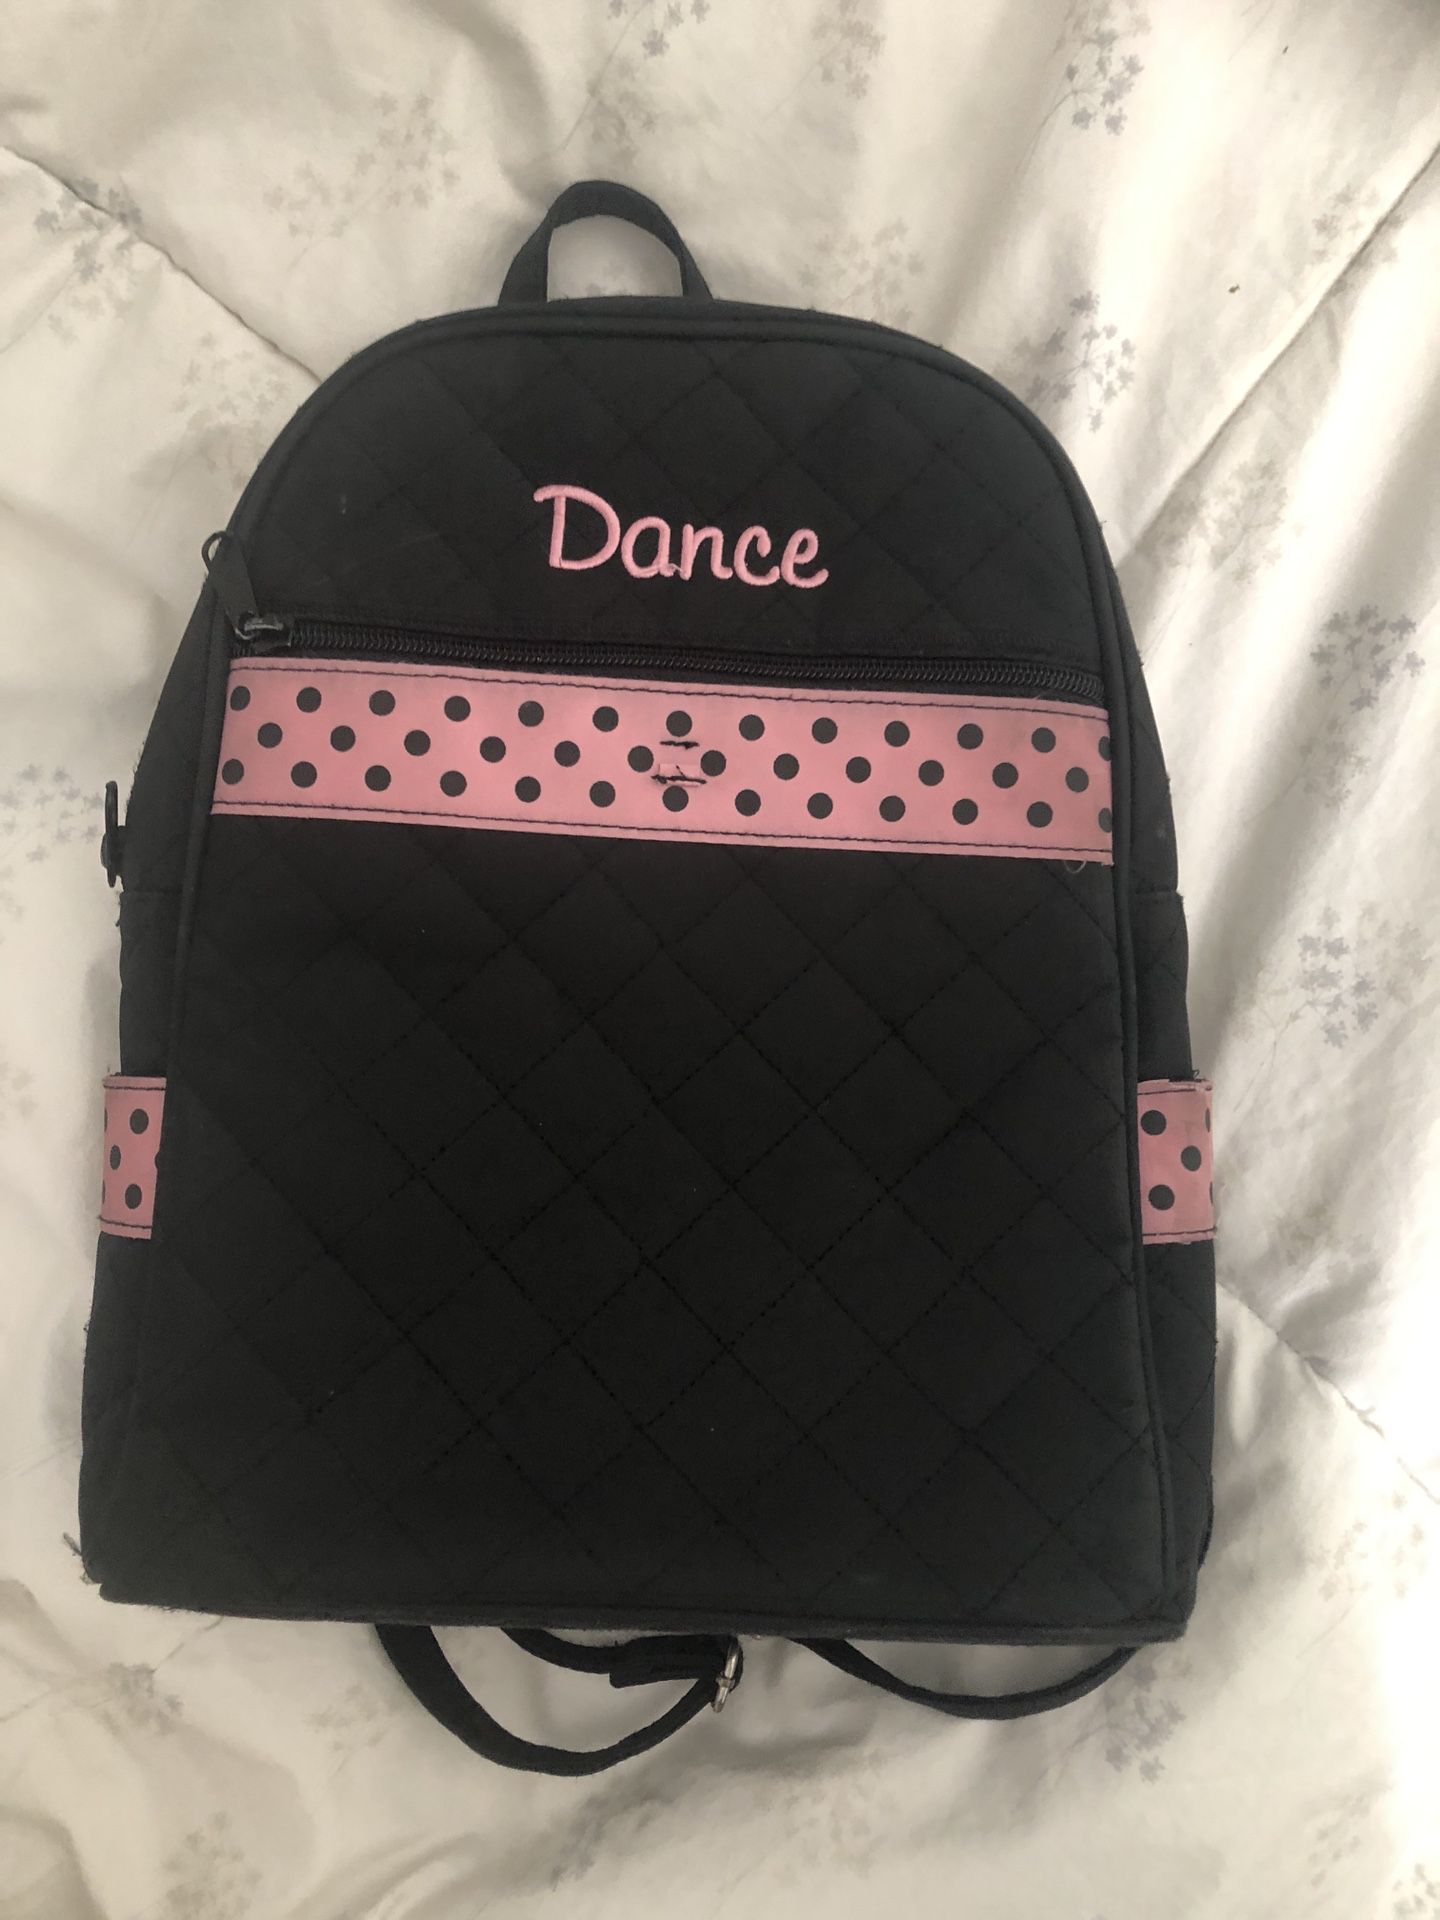 Cute dance backpack